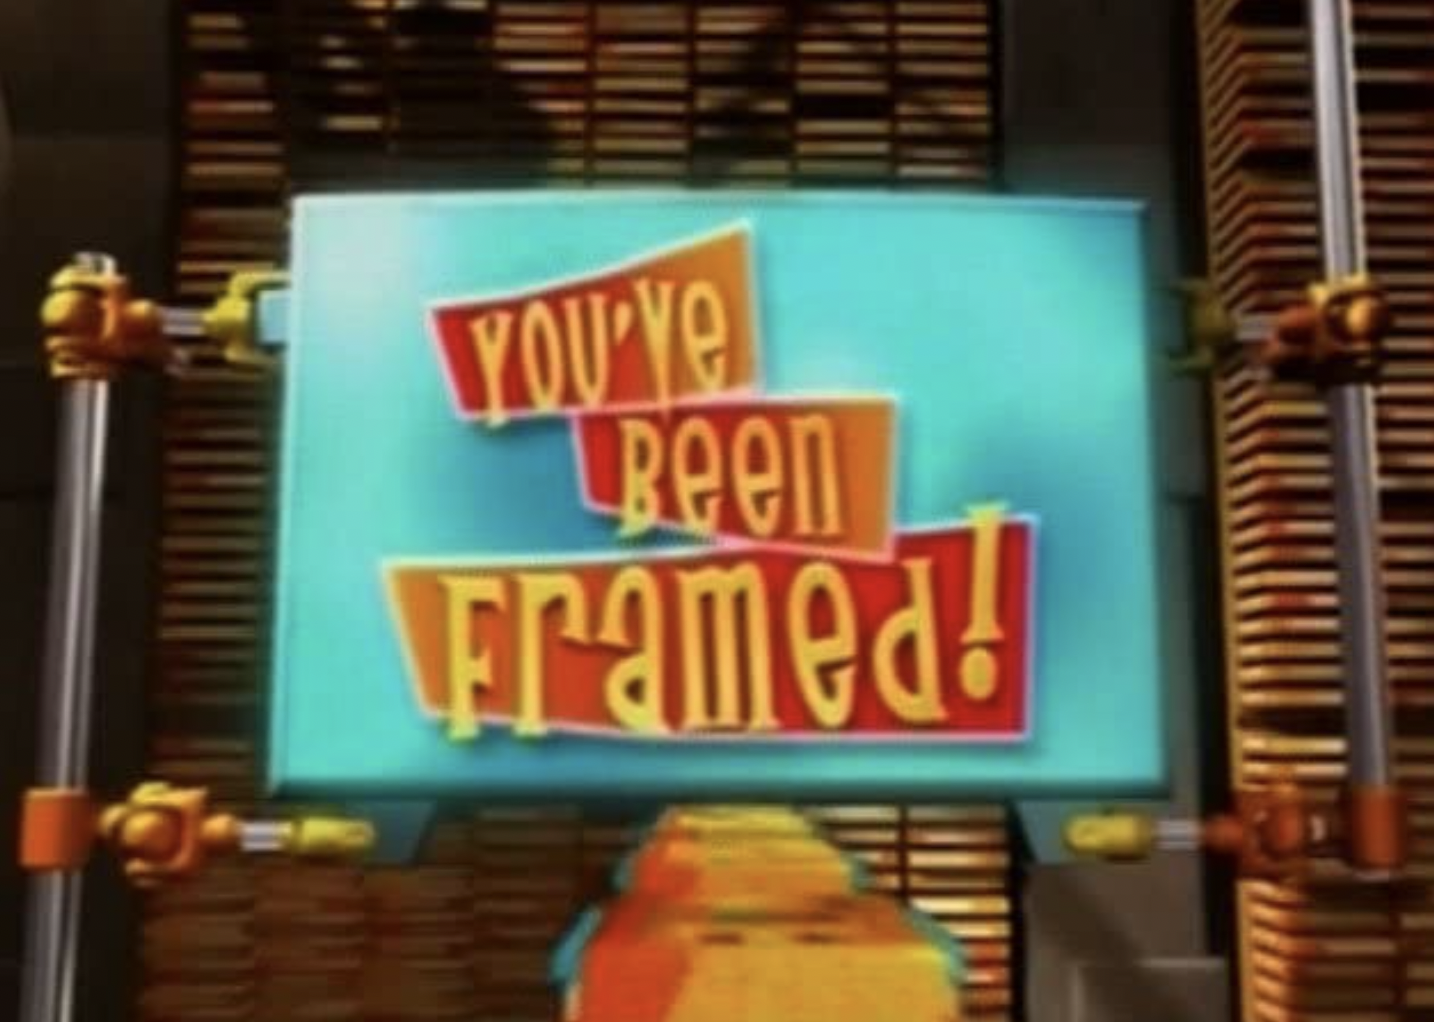 "You've Been Framed!" show sign.